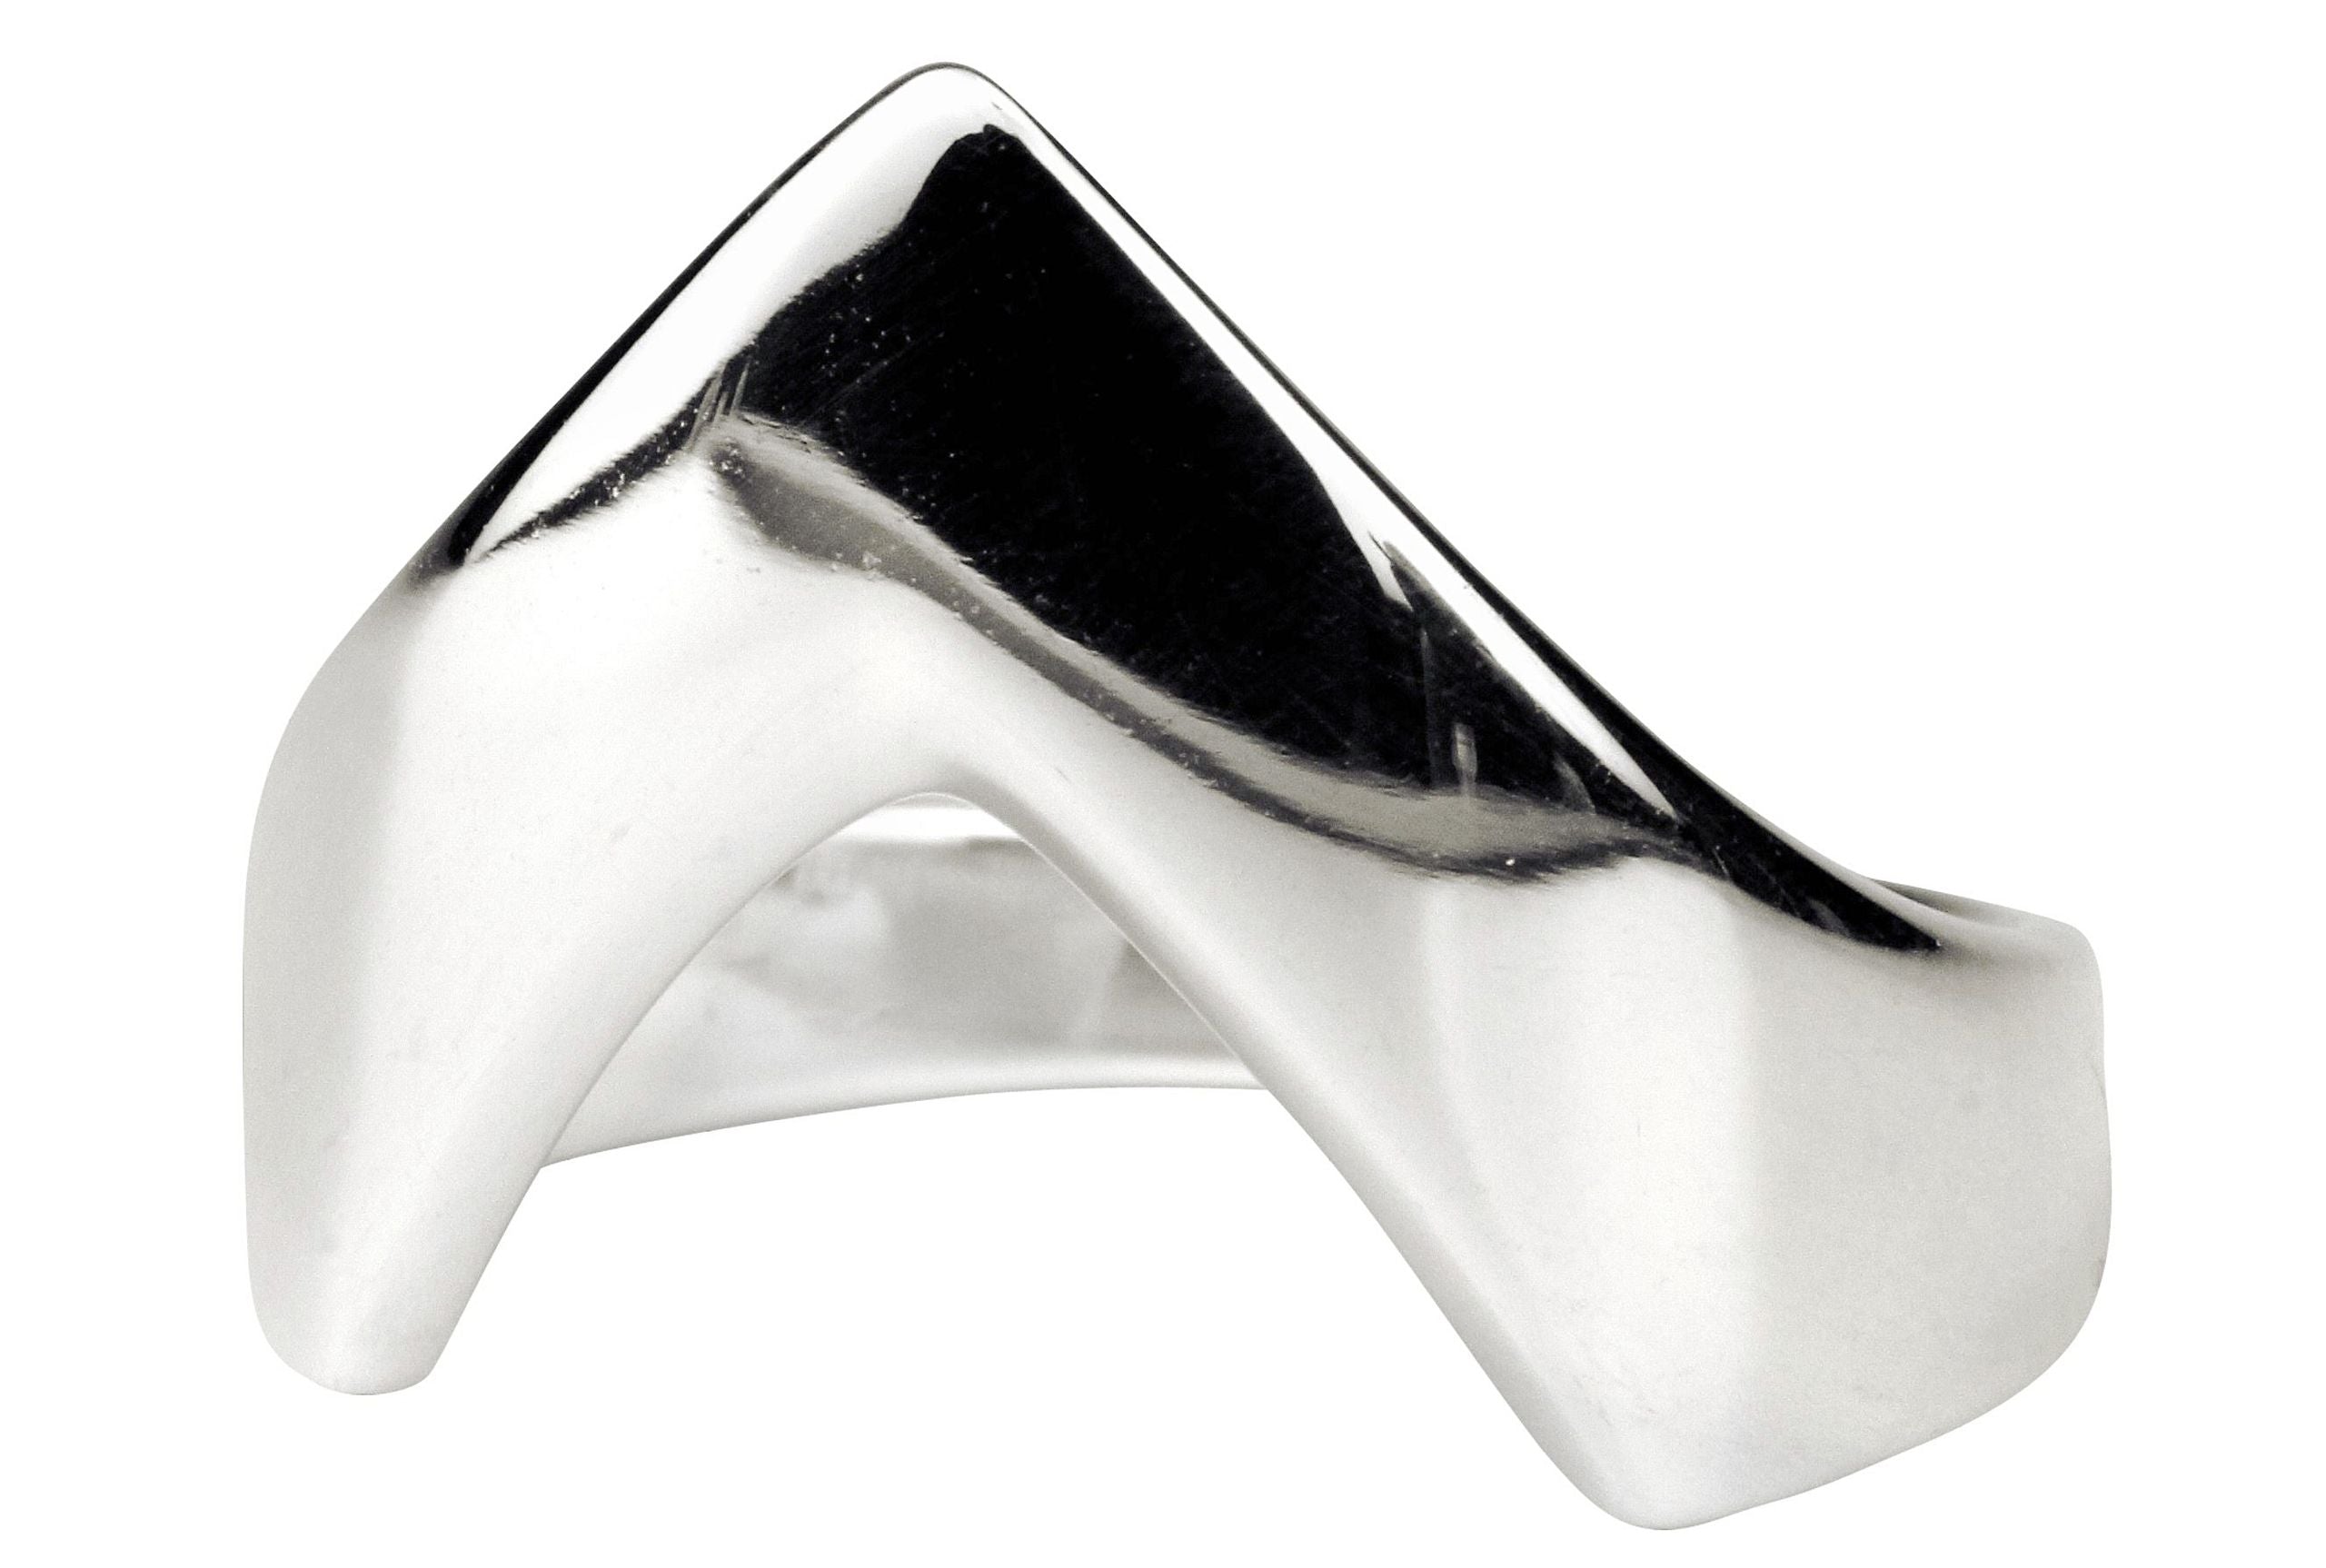 Ein spitz zulaufender Bandring aus Silber, der am Finger wie ein kleiner Pfeil nach vorne zeigt.